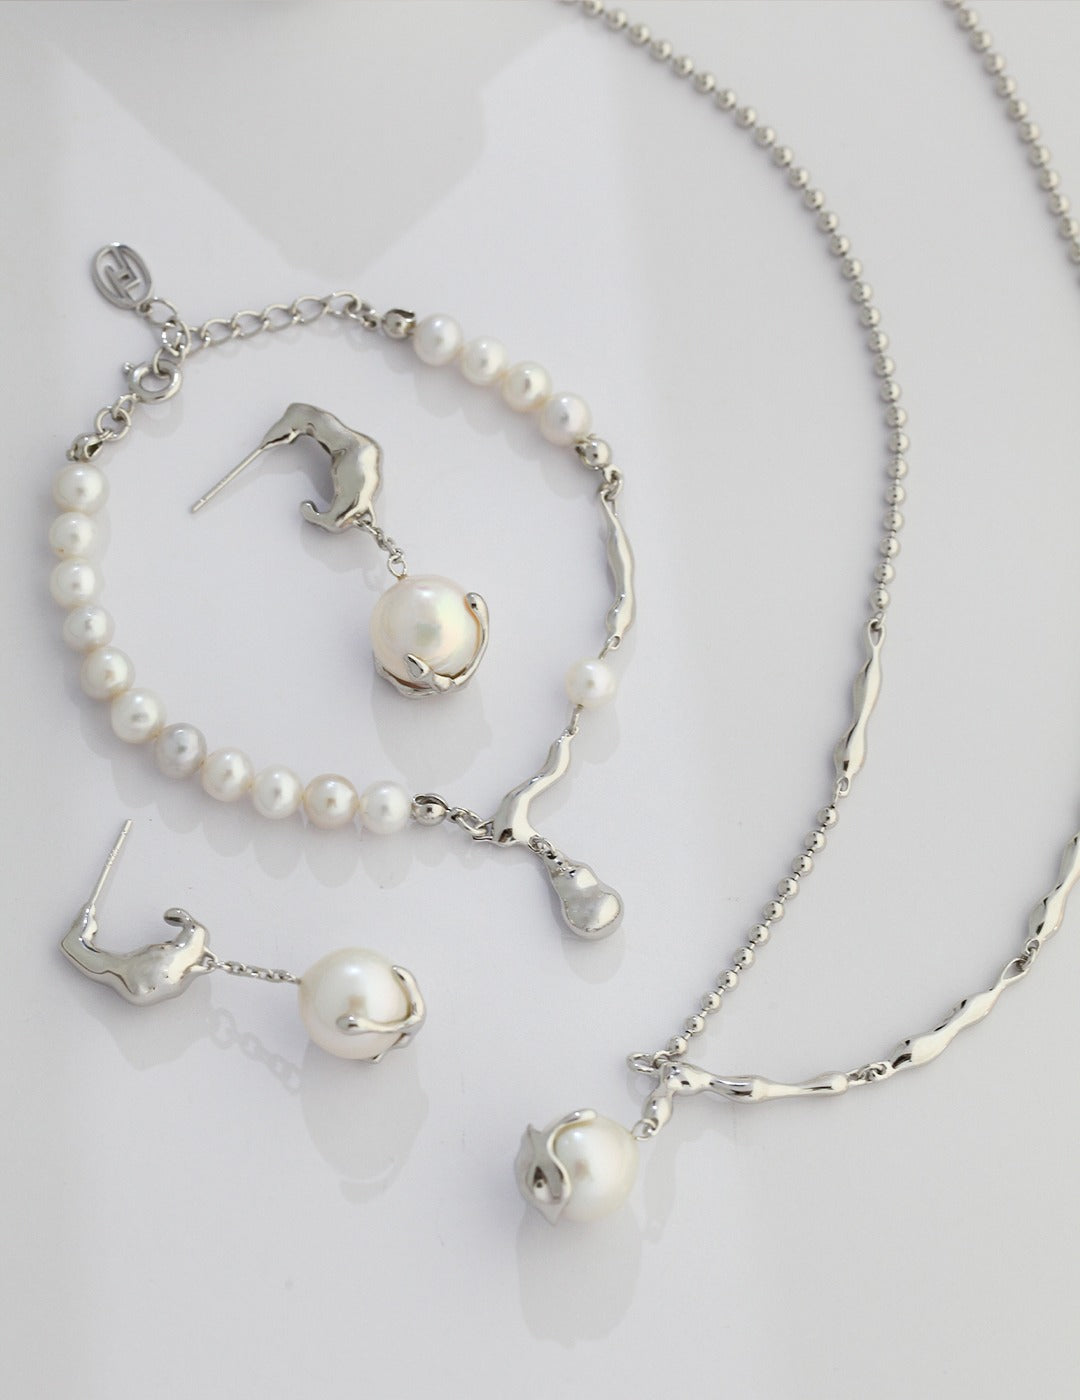 Minimalist single pearl dangle earrings in silver